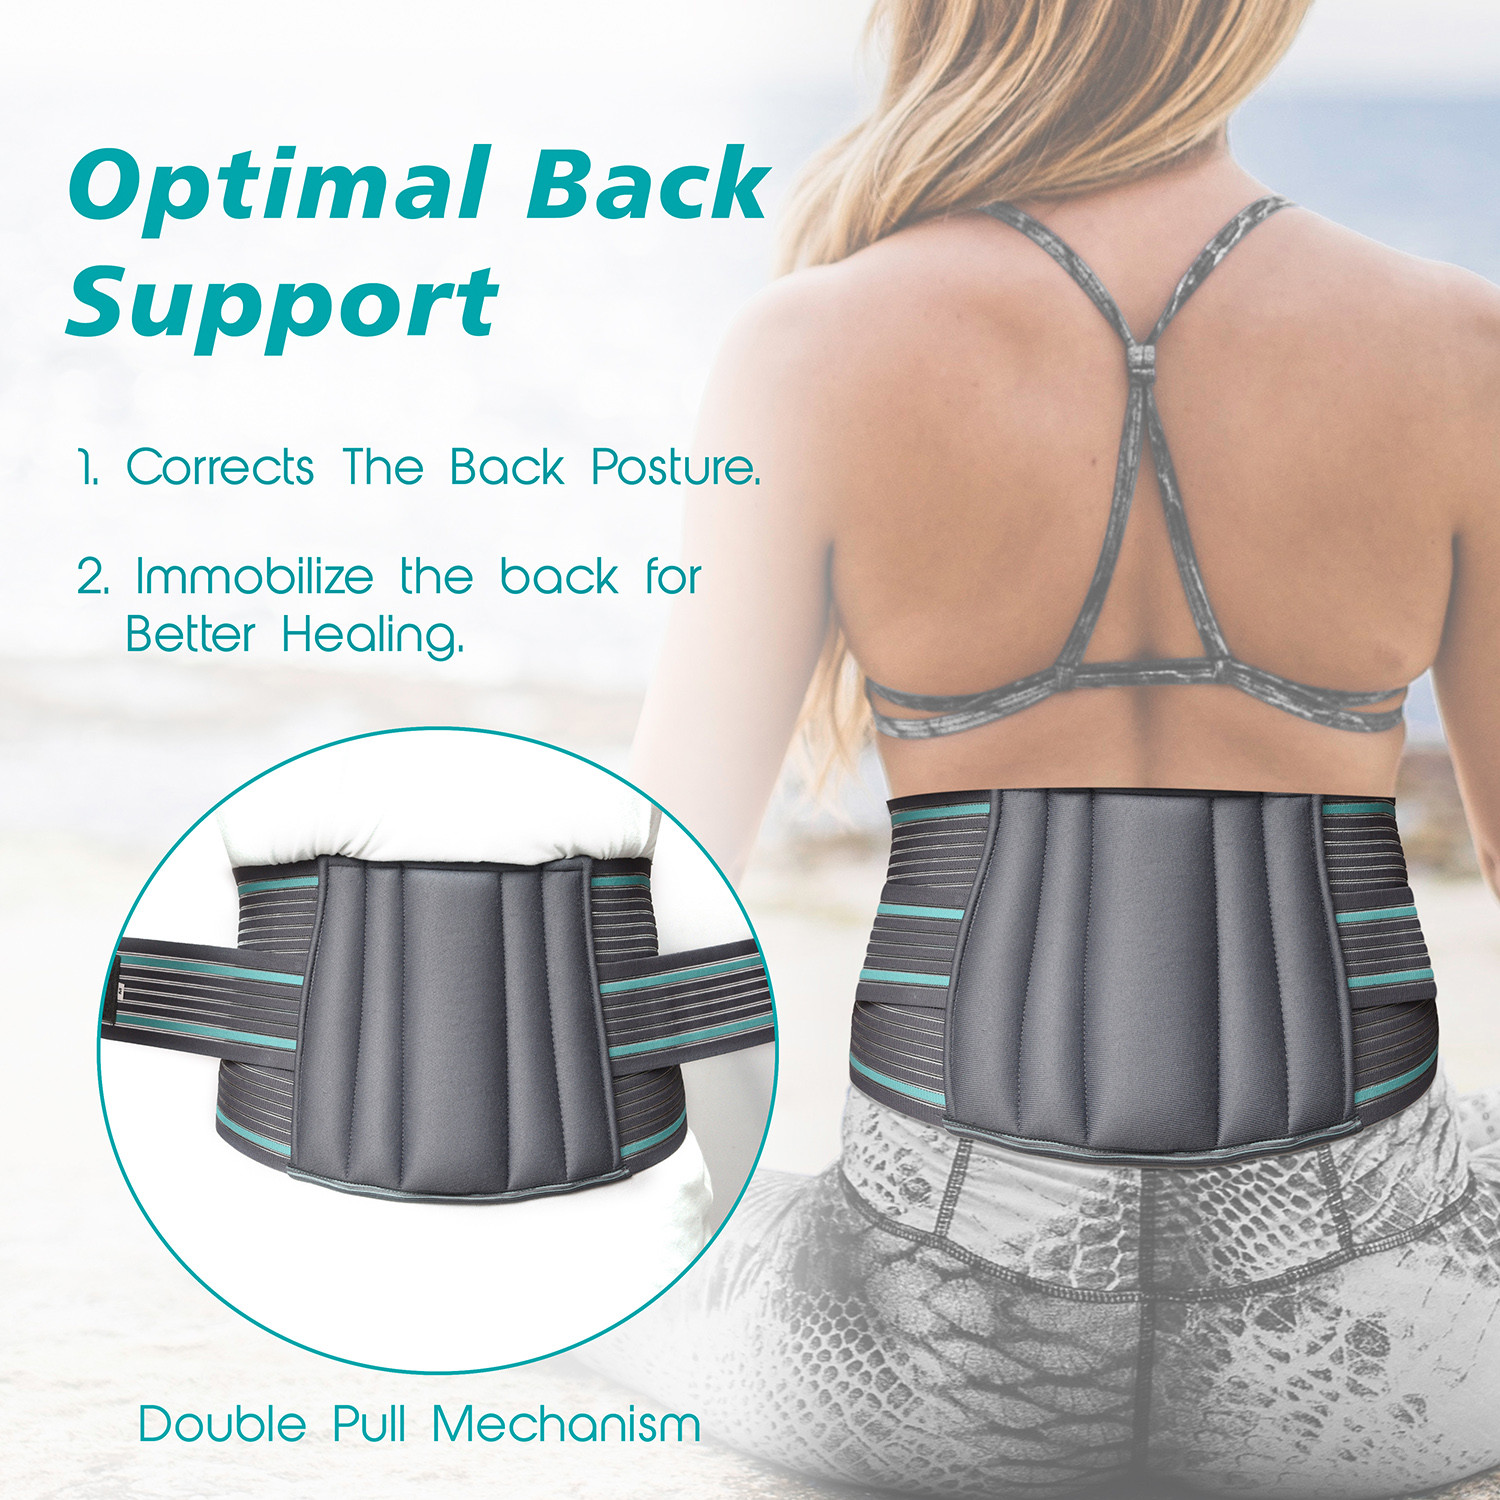 Kuber Industries Lumbar Sacral Belt | Spondylitis Back Pain Belt | Pregnancy Belt | Contoured Belt | Fat Reduction Belt | Lumbo Sacral Belt | Size-XL | Gray